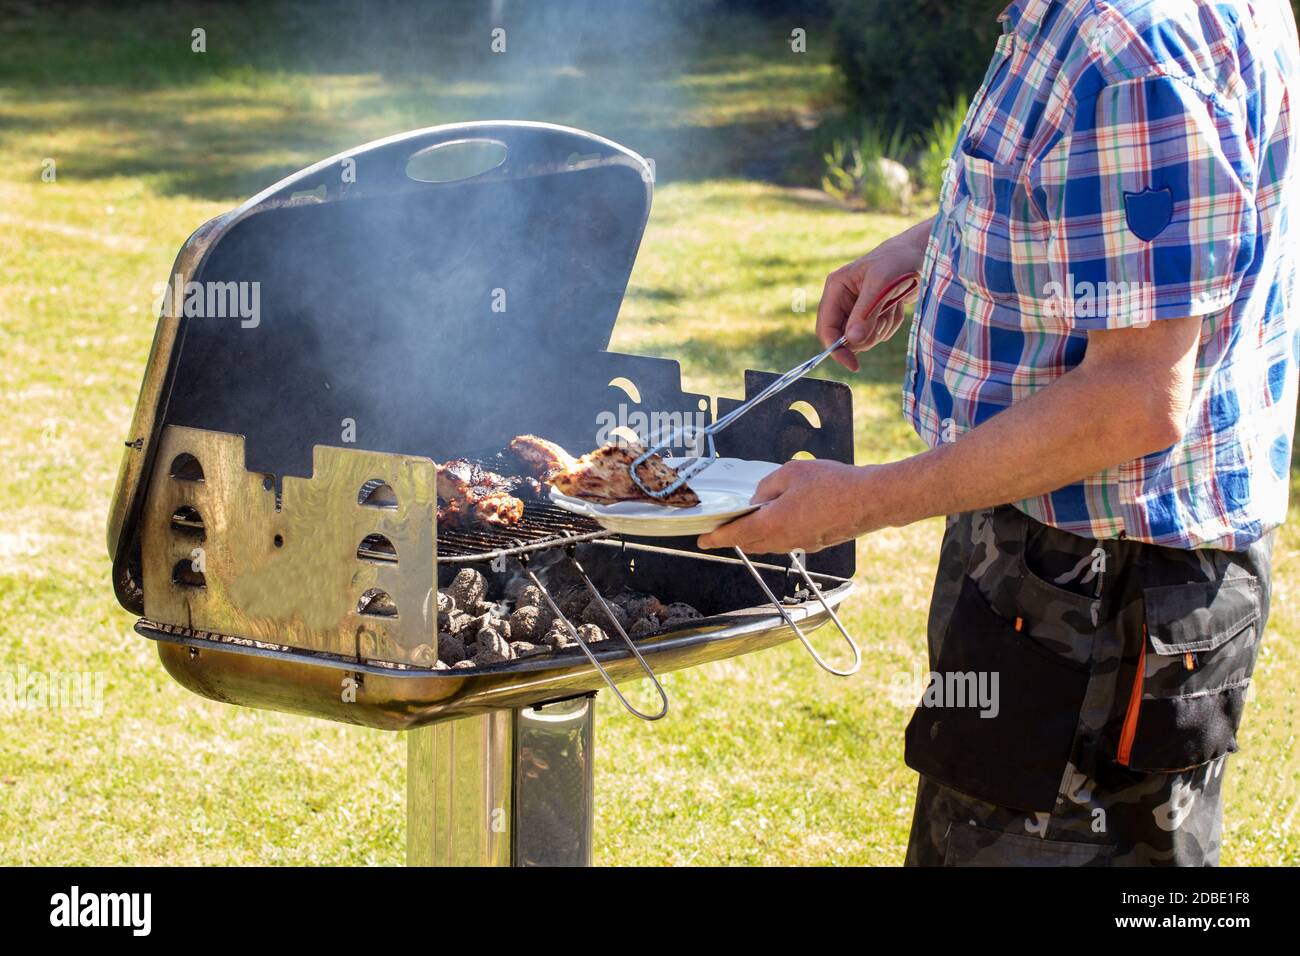 Ein Mann am Holzkohlegrill grillen Steaks, Grillwürste und Hühnerflügel und  benutzen Grillzangen. Selektiver Fokus auf den Grill gegen eine gree  Stockfotografie - Alamy